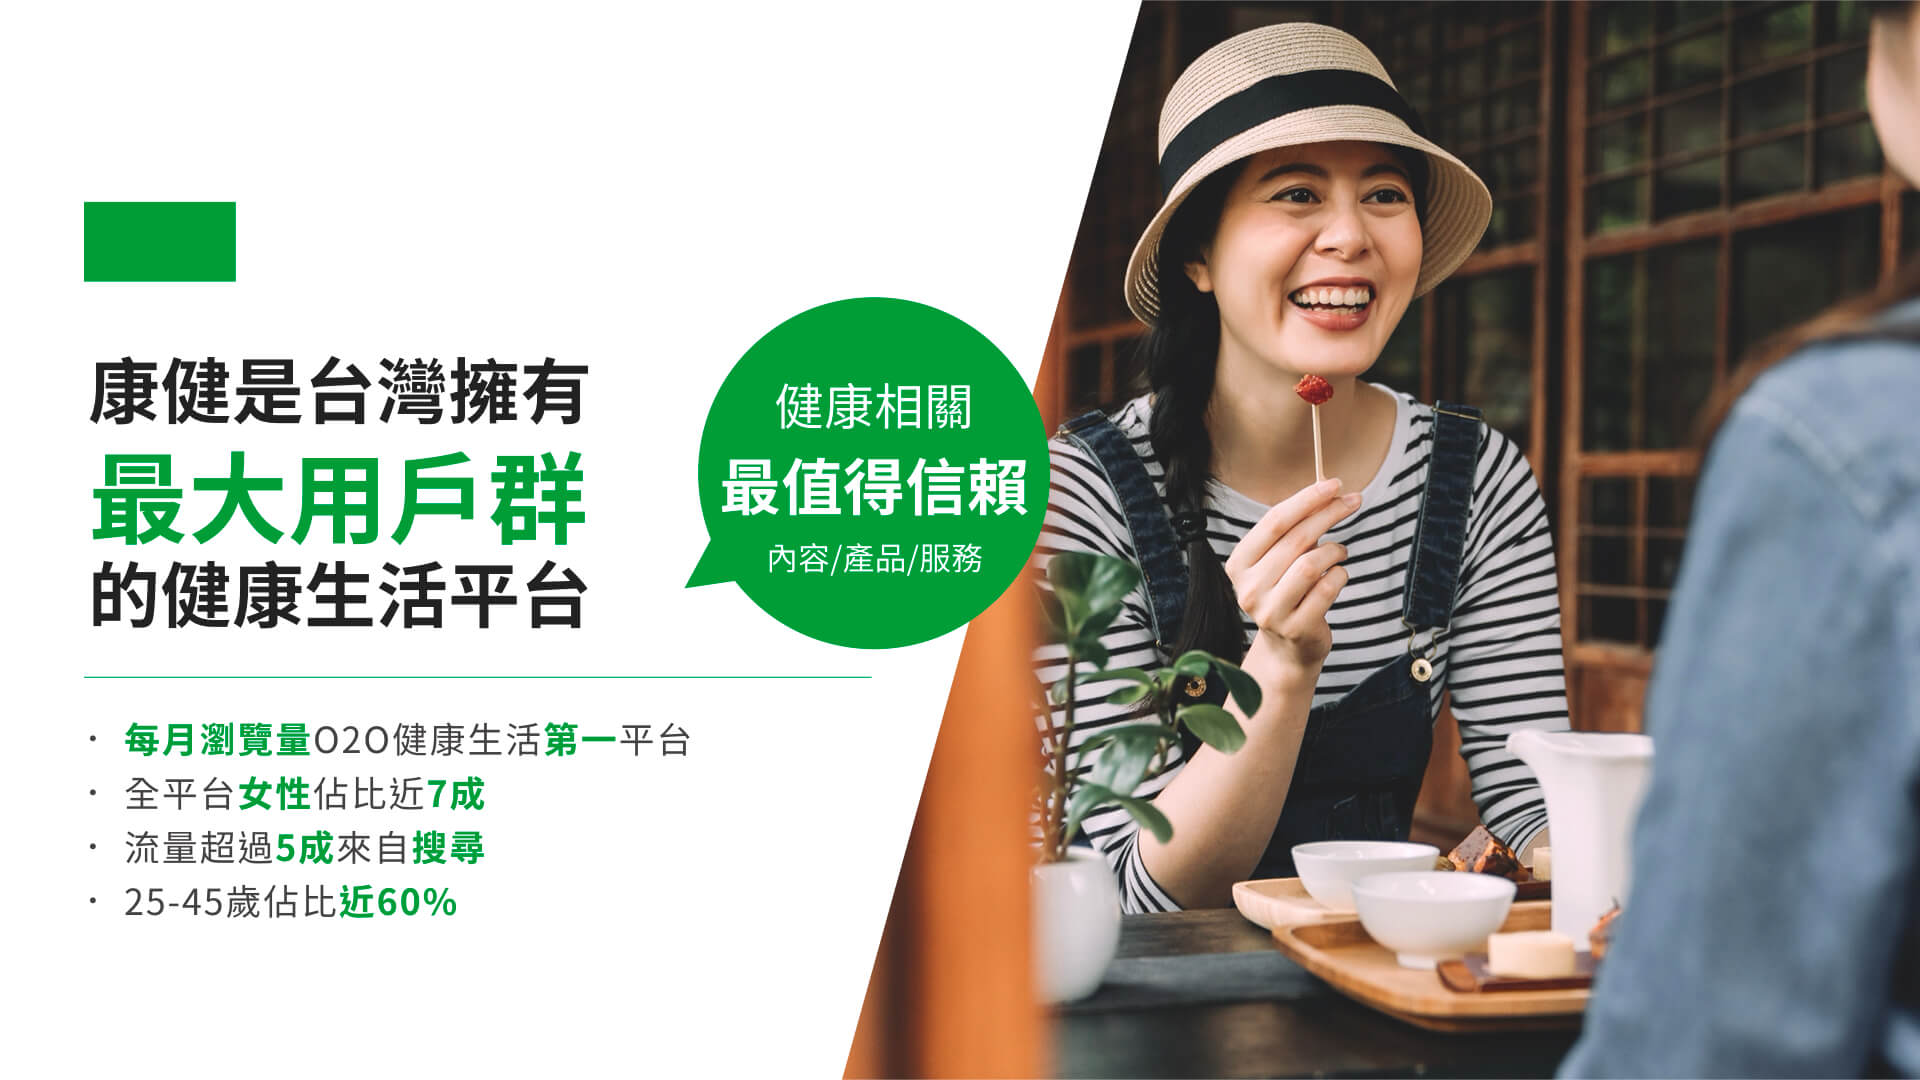 康健是台灣擁有最大用戶群的健康生活平台